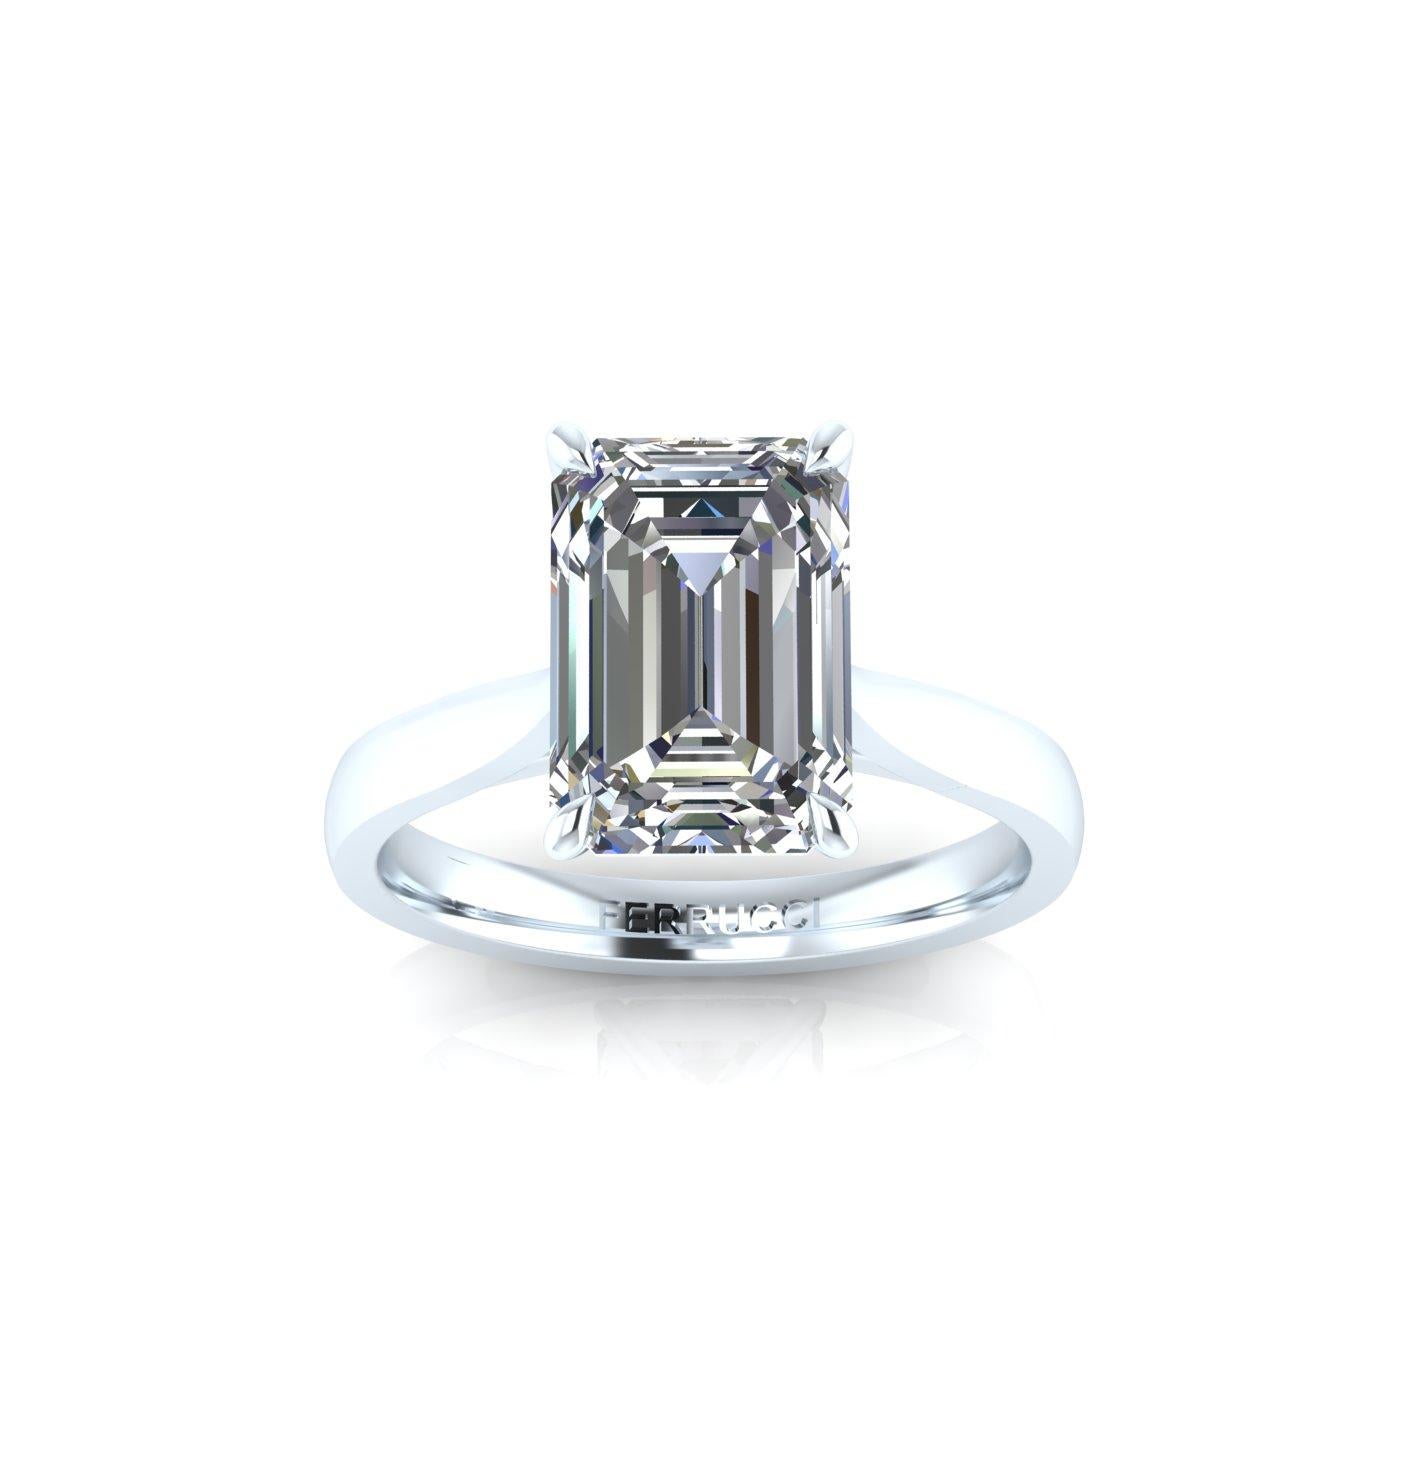 GIA-zertifizierter 3,50-Karat-Smaragd-Diamant im Stufenschliff, Farbe H,  VS2 Klarheit, Ausgezeichnete Specs, Set in gemacht zu passen,  Solitär Platin 950 Verlobungsring Fassung.
Vollständig anpassbar an die Form und Größe eines jeden